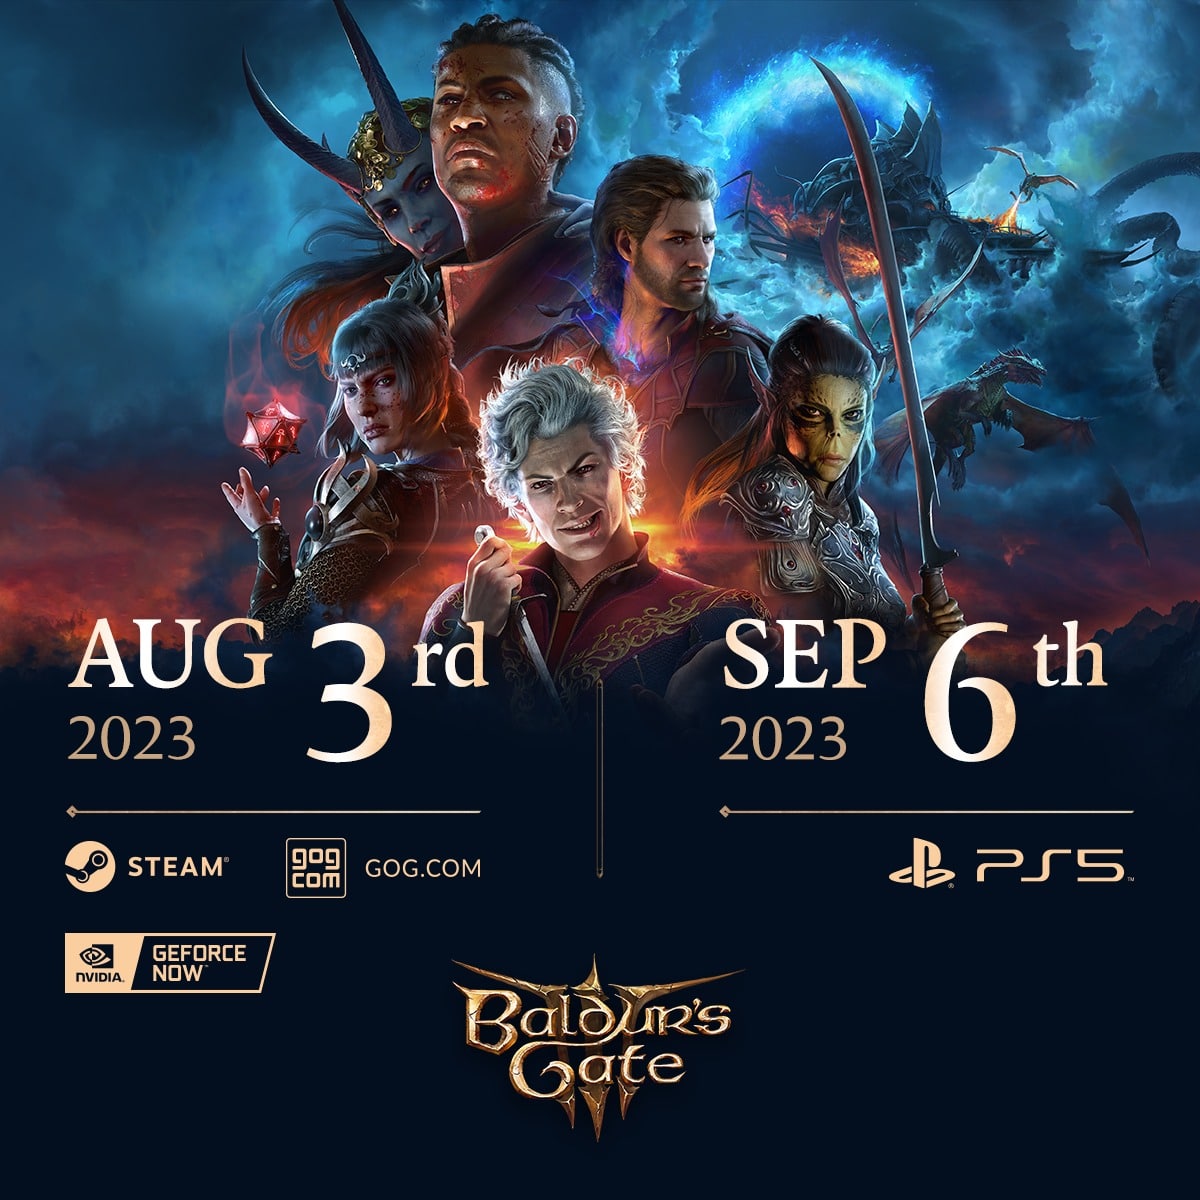 ПК-версия Baldur's Gate III выйдет на месяц раньше